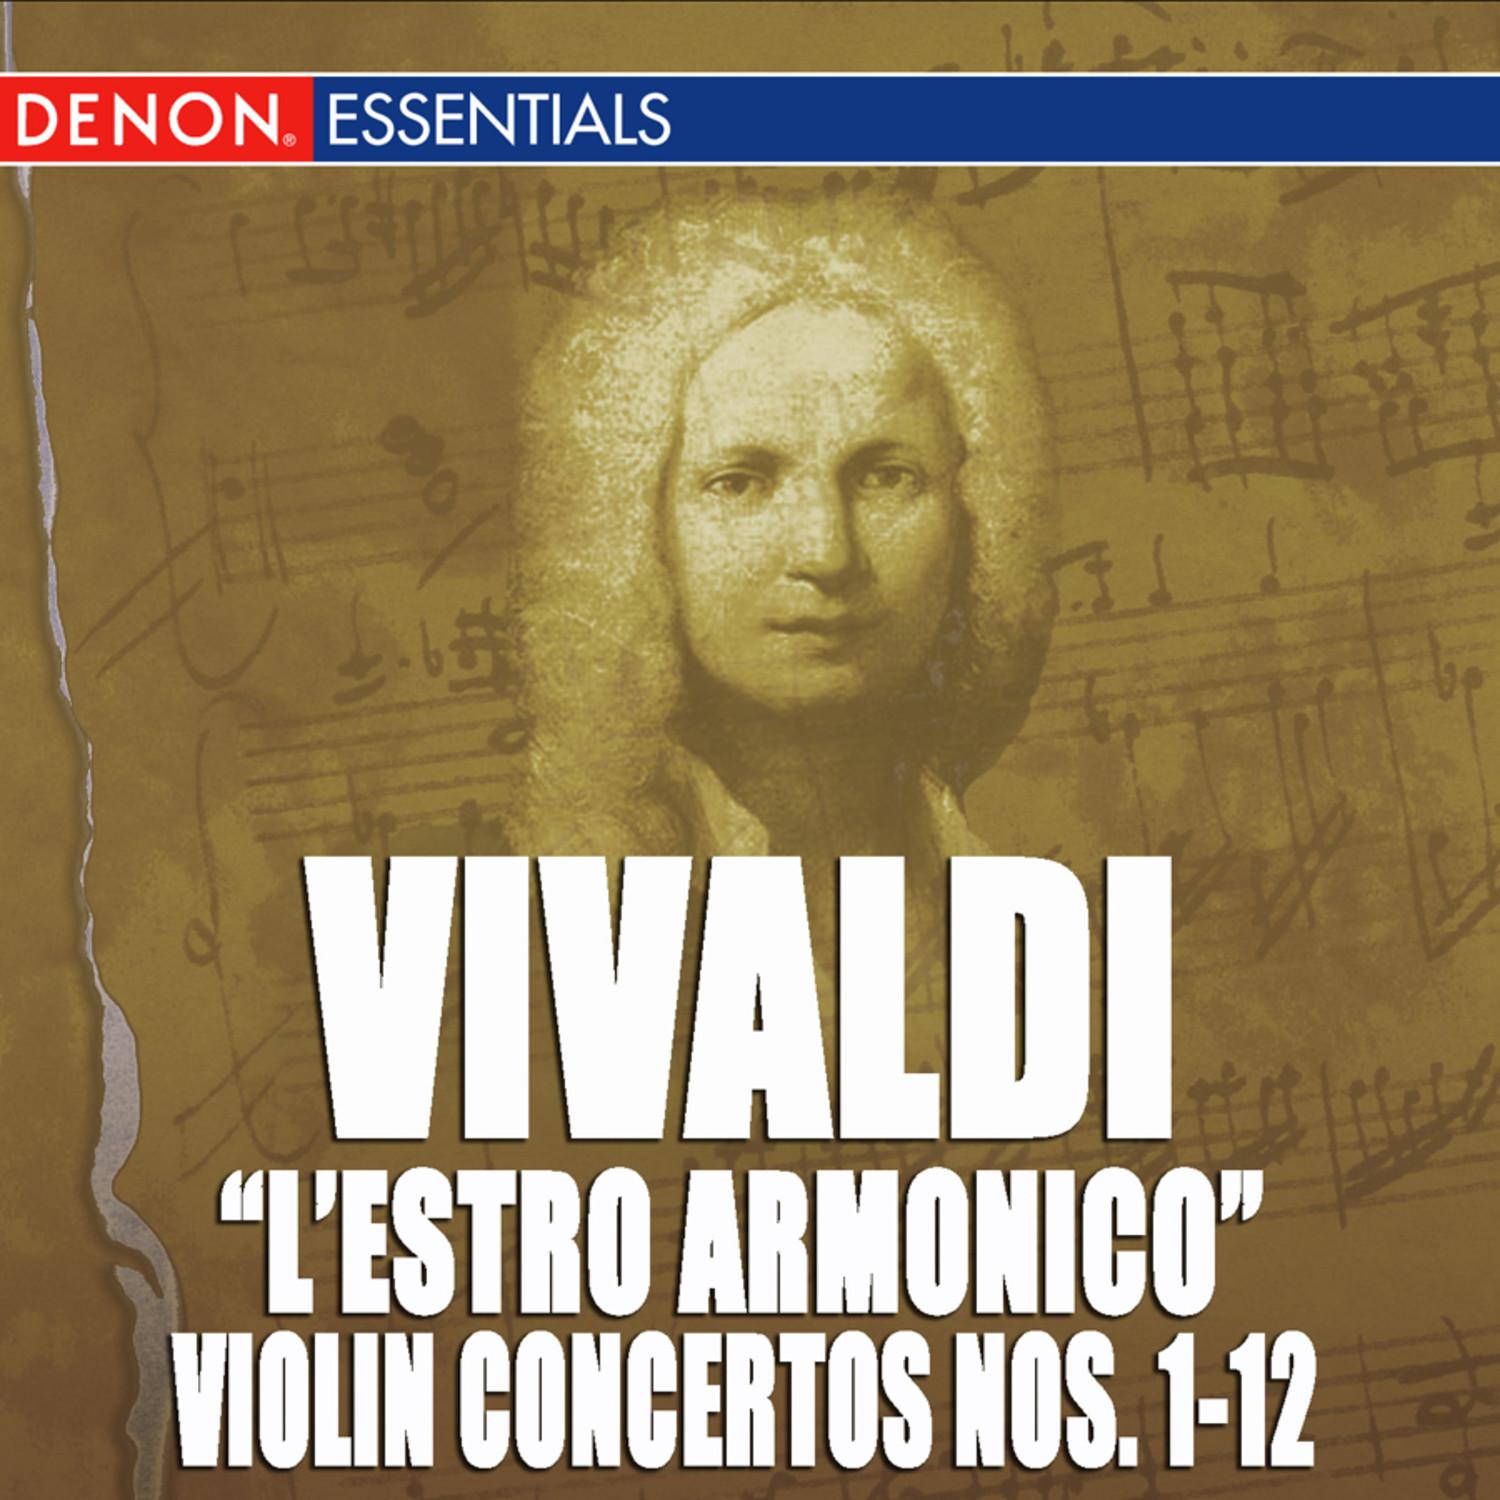 Concerto for Violin, Strings & B.c. No. 3 in G Major, Op. 3 RV 310: I. Allegro